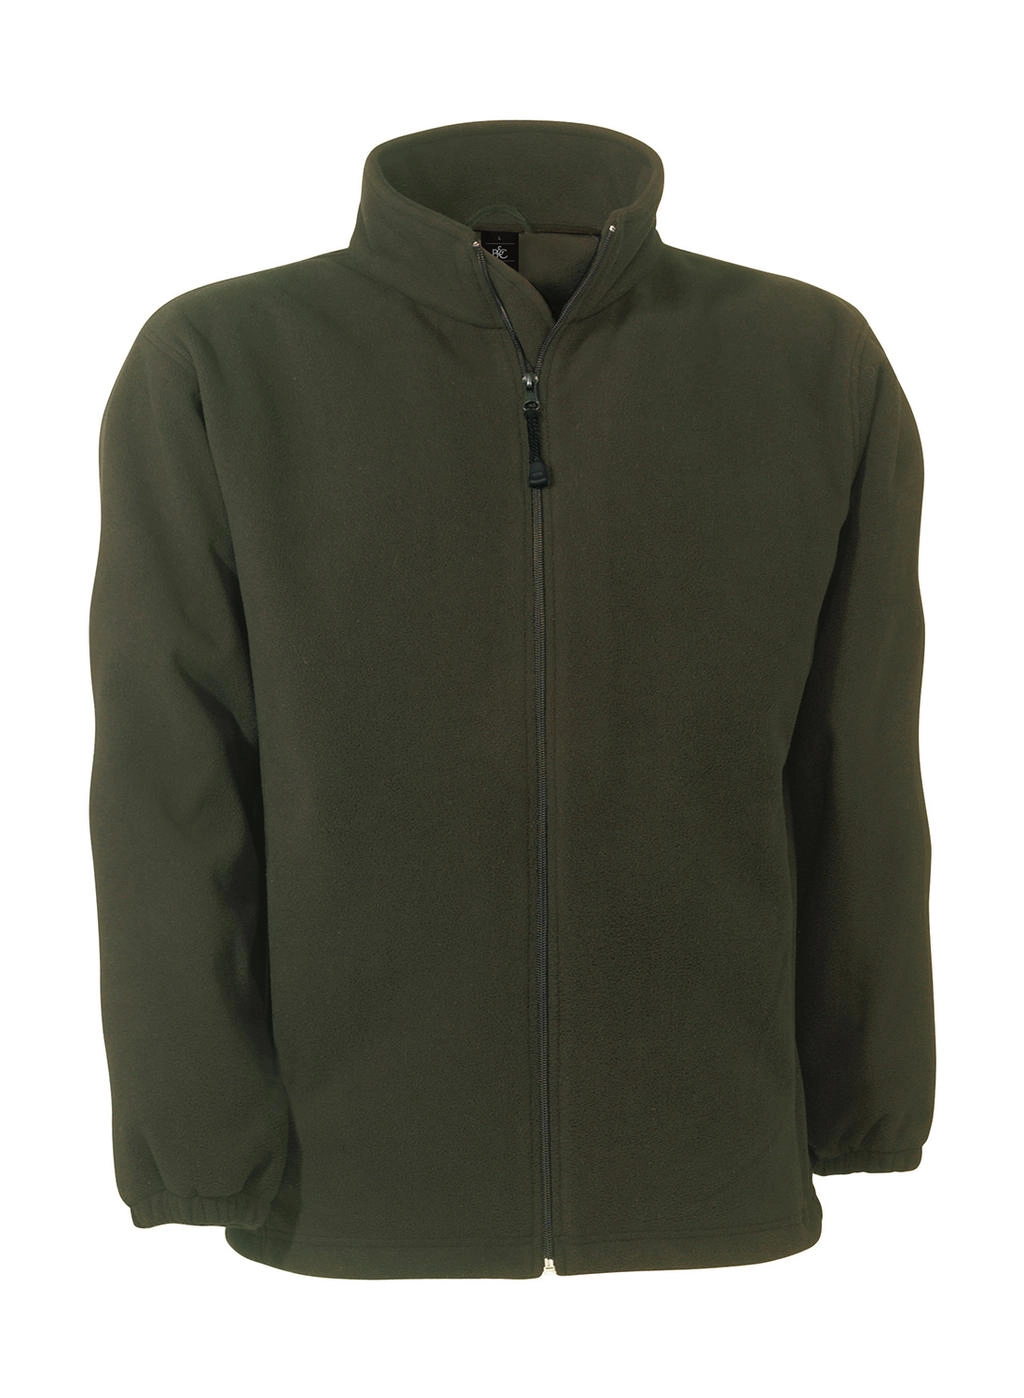 WindProtek Waterproof Fleece Jacket zum Besticken und Bedrucken in der Farbe Olive mit Ihren Logo, Schriftzug oder Motiv.